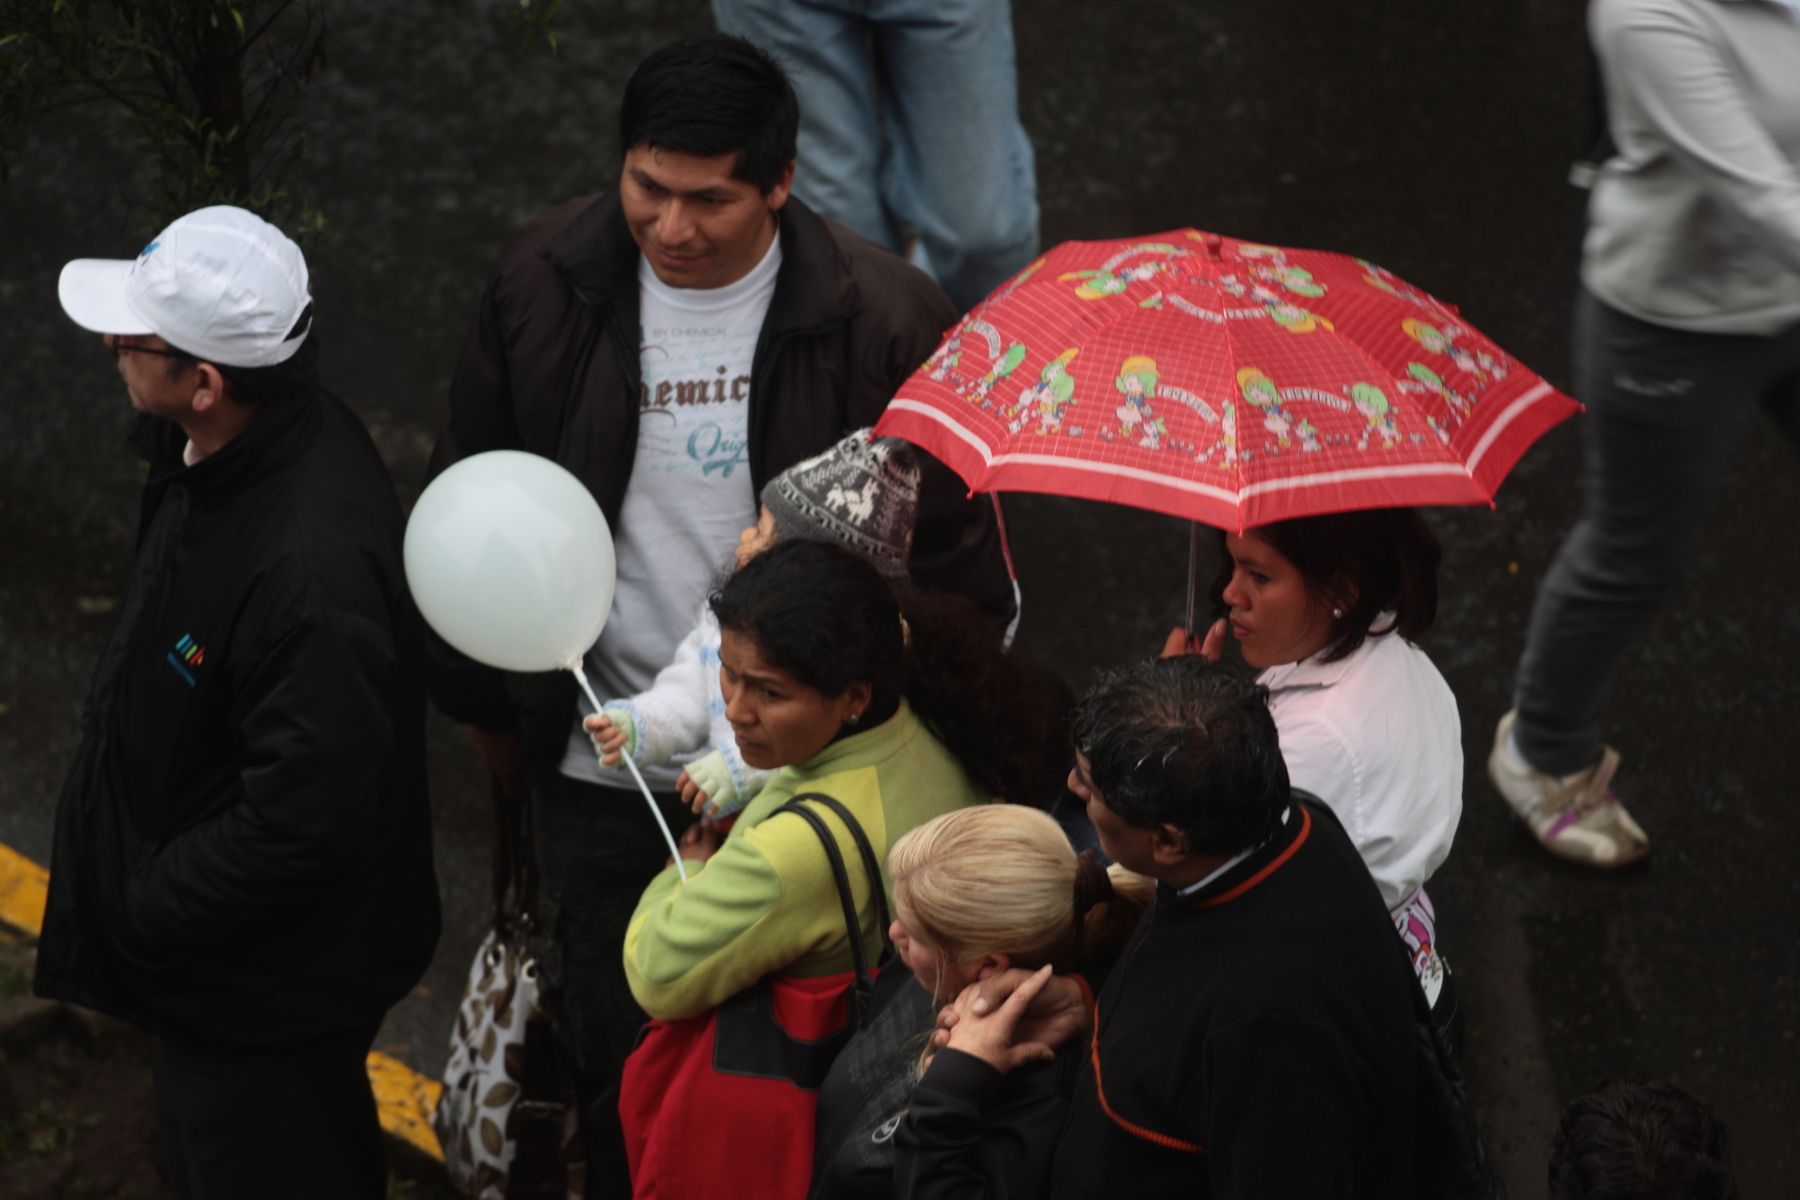 Llovizna incesante en Lima no melló ánimo de fieles que siguen cuarta procesión del Señor de los Milagros. Foto: ANDINA/Juan Carlos Guzmán Negrini.